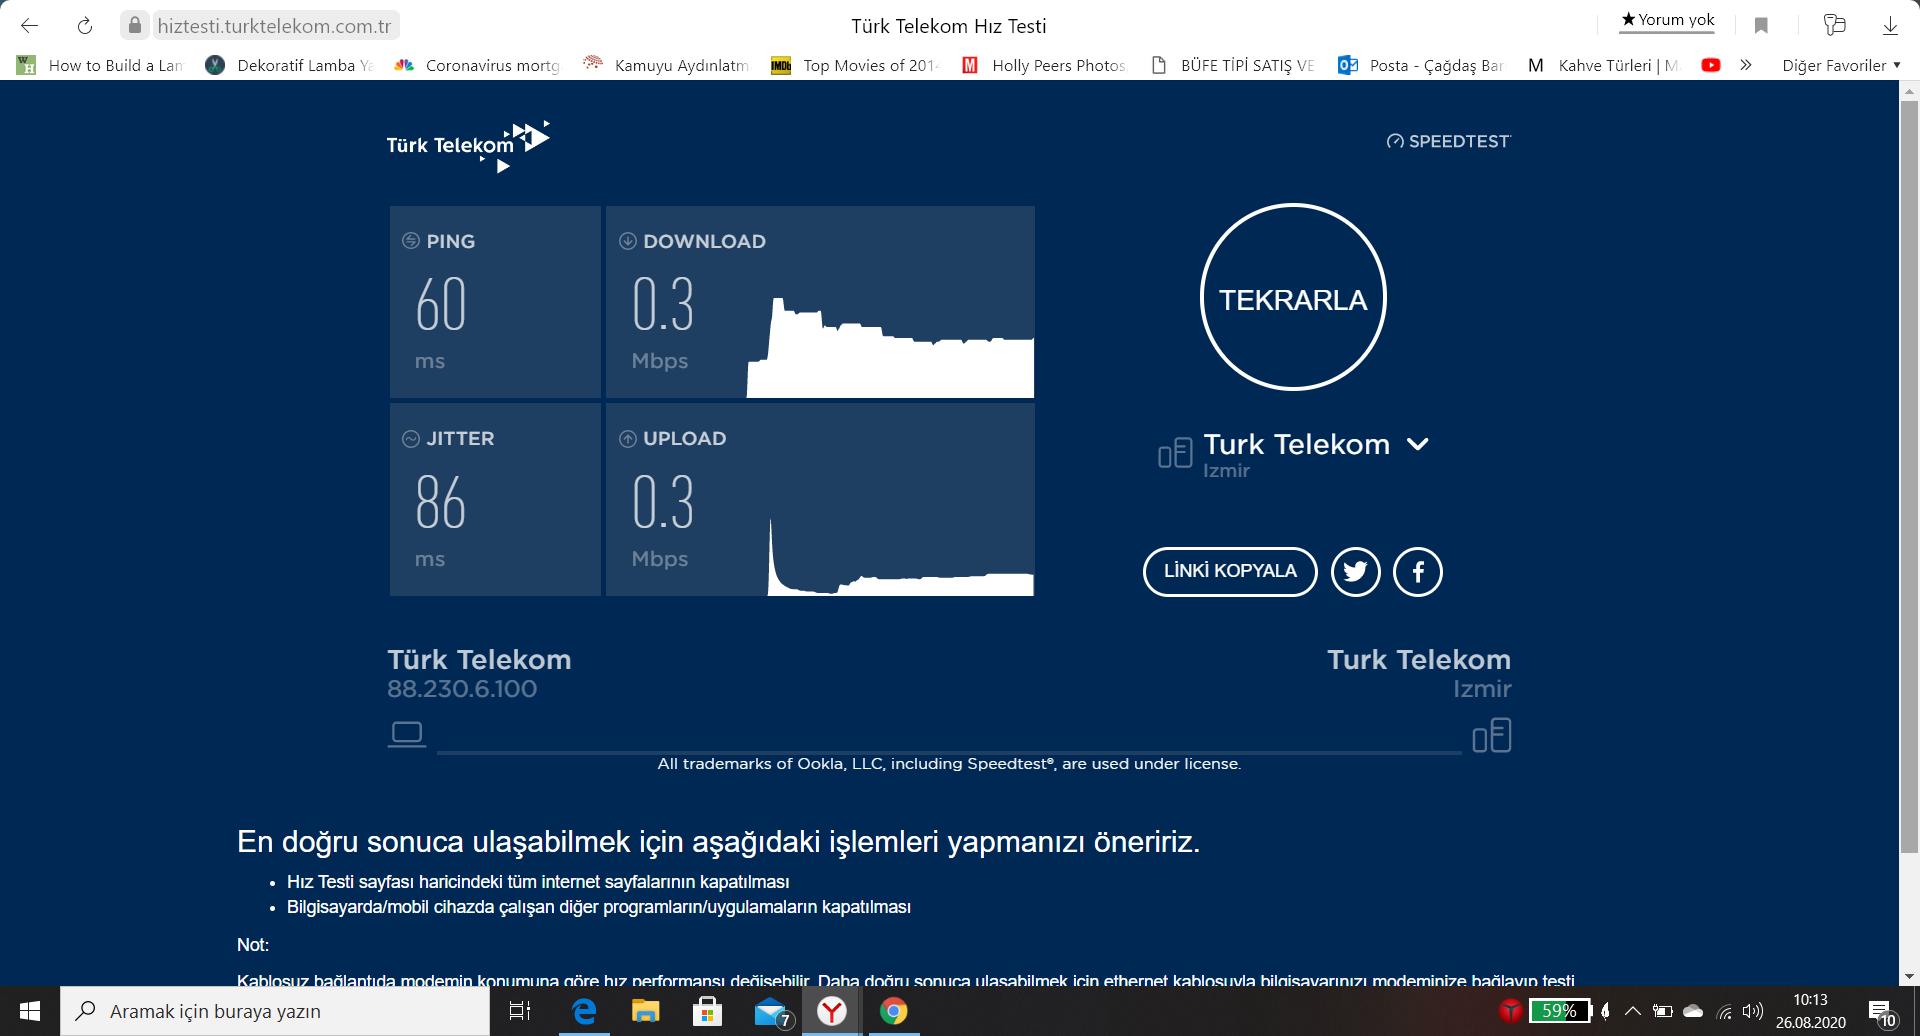 turk telekom 0 3 mbps internet hizi tam bir fiyasko sikayetvar